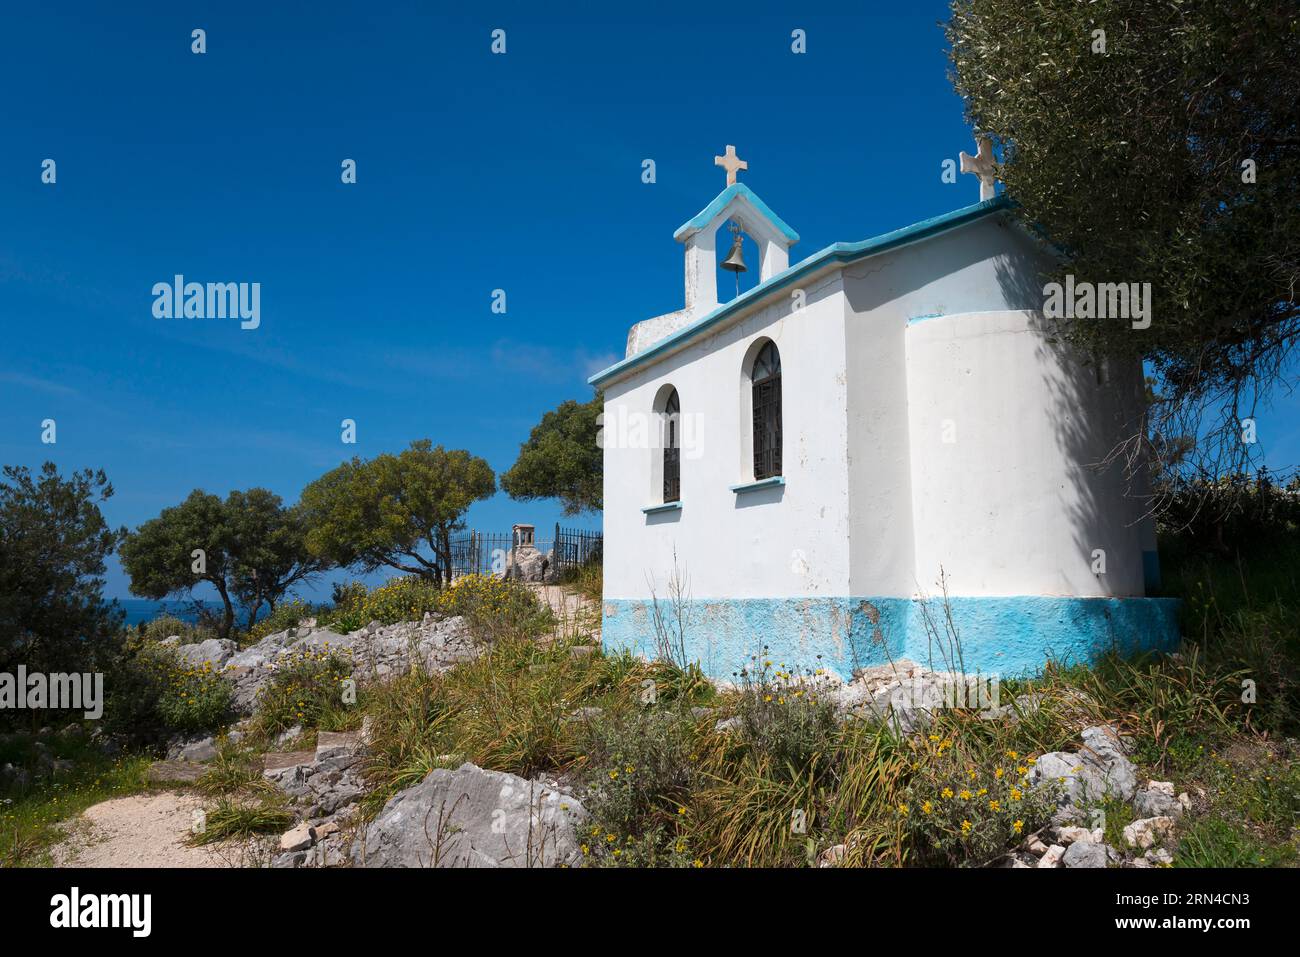 Holy Church of the Theotokos, Kounoupeli, Agios Nikolaos, Andravida-Kyllini, Elis, Kyllini Peninsula, Peloponnese, Greece Stock Photo